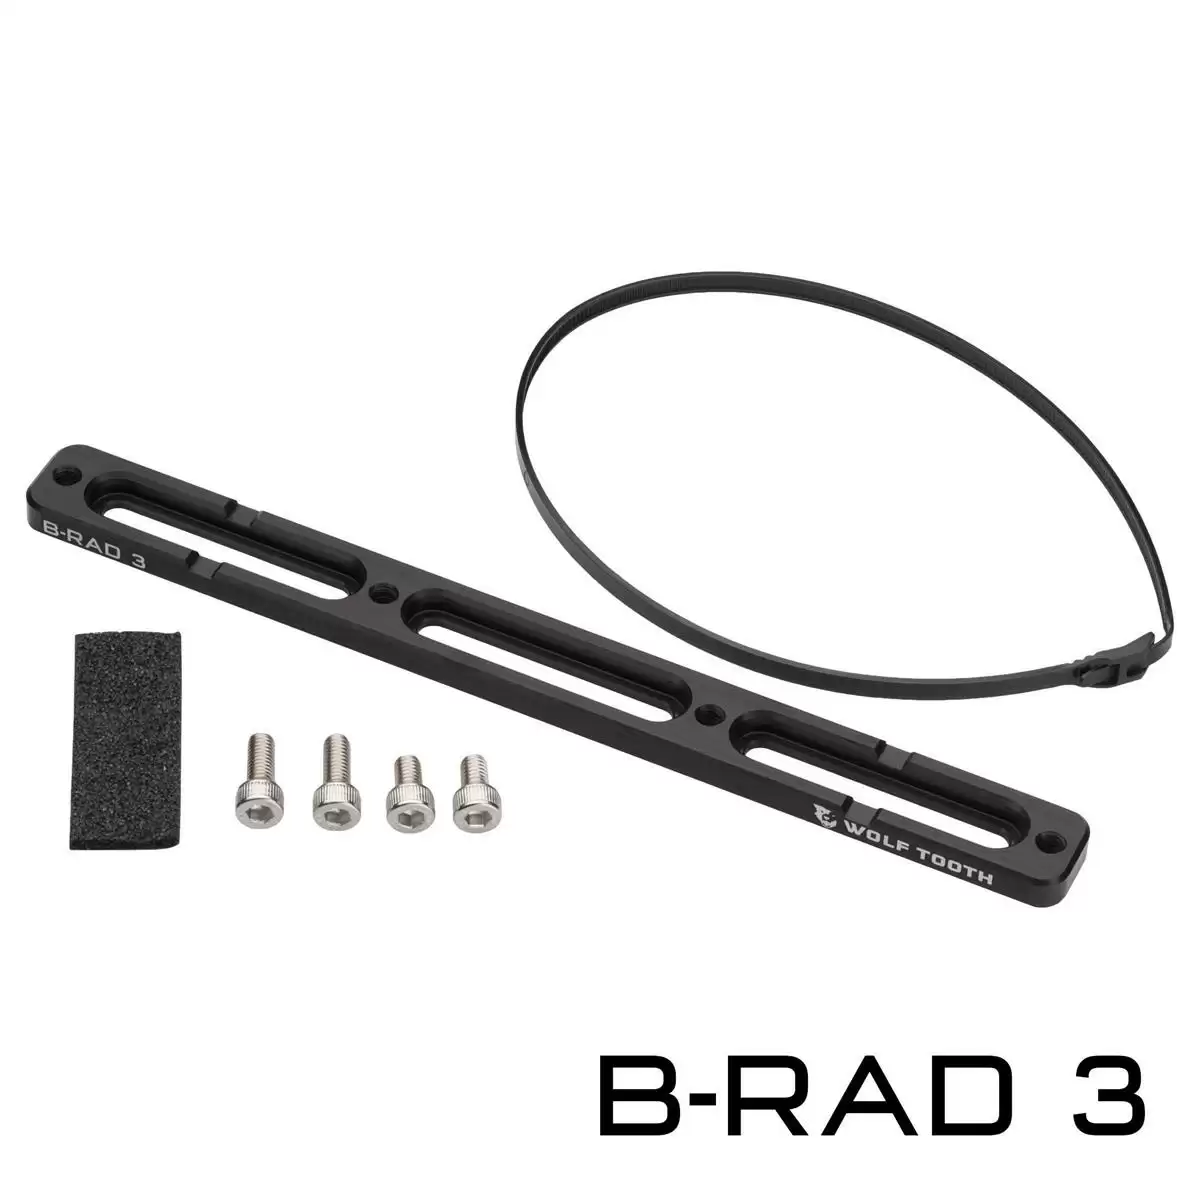 Base de montaje B-Rad 3 para correas y bolsos - image